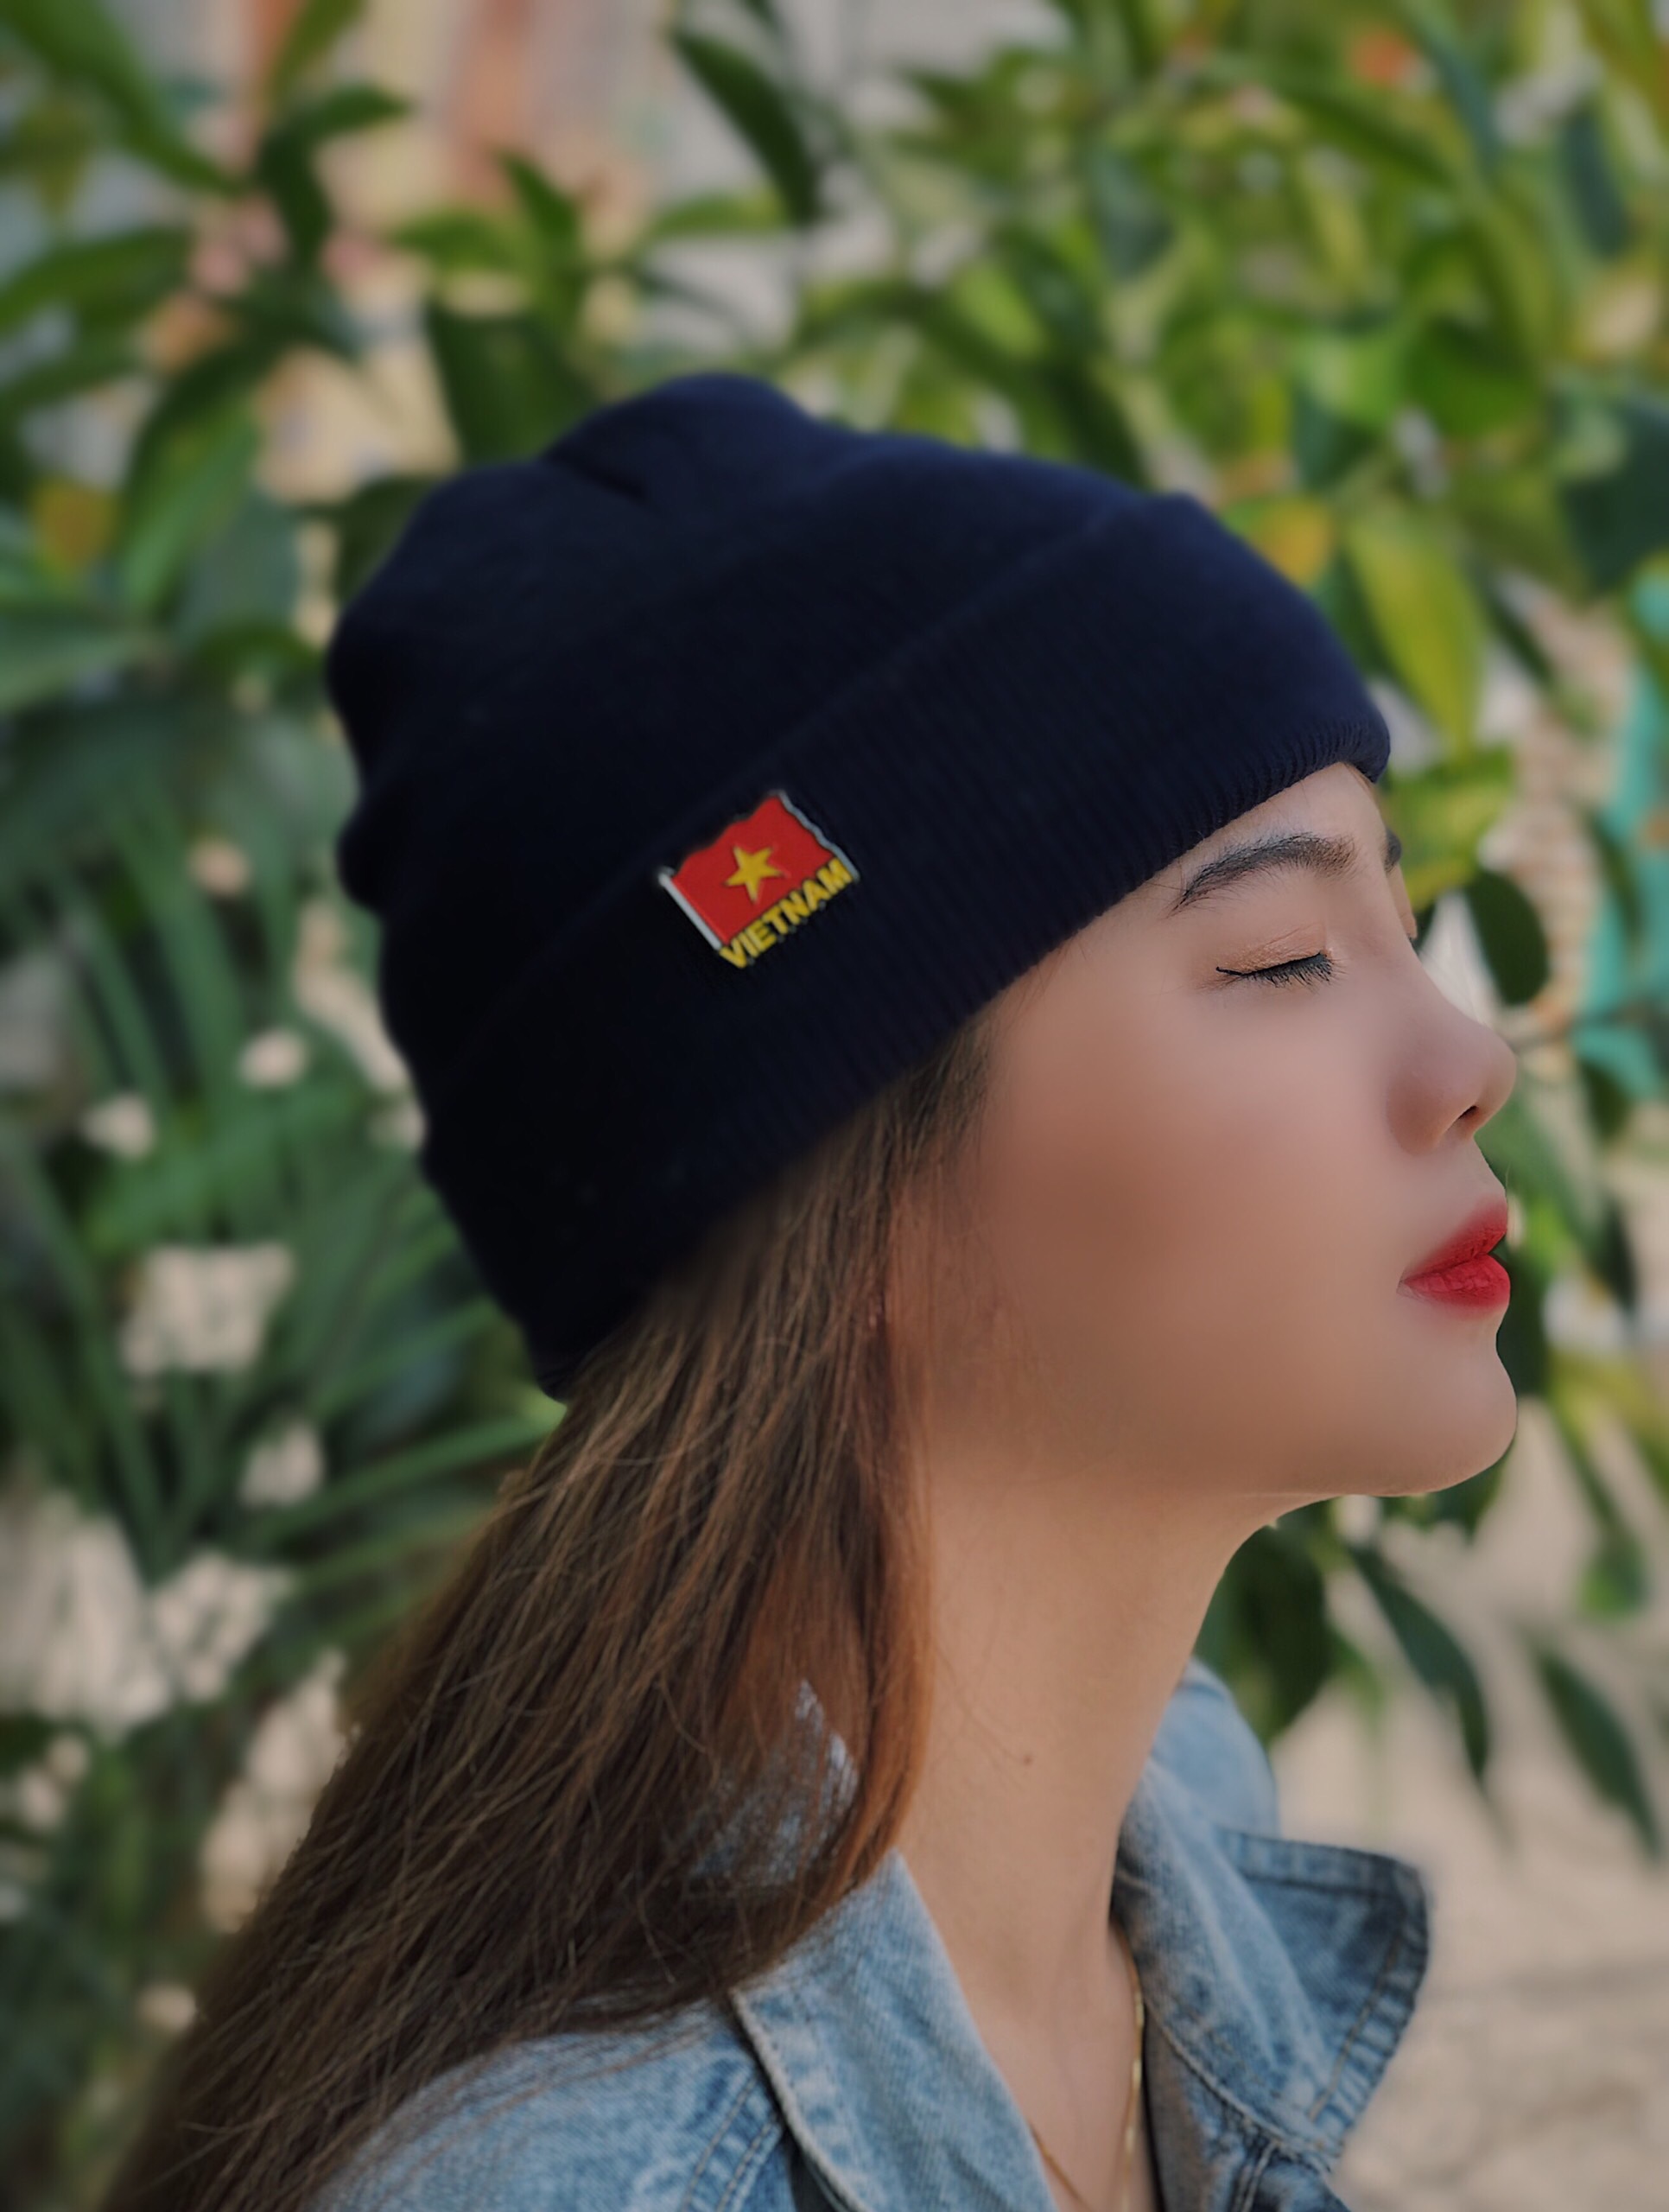 Lapel Pin lưu niệm Việt Nam - Lá cờ Việt Nam